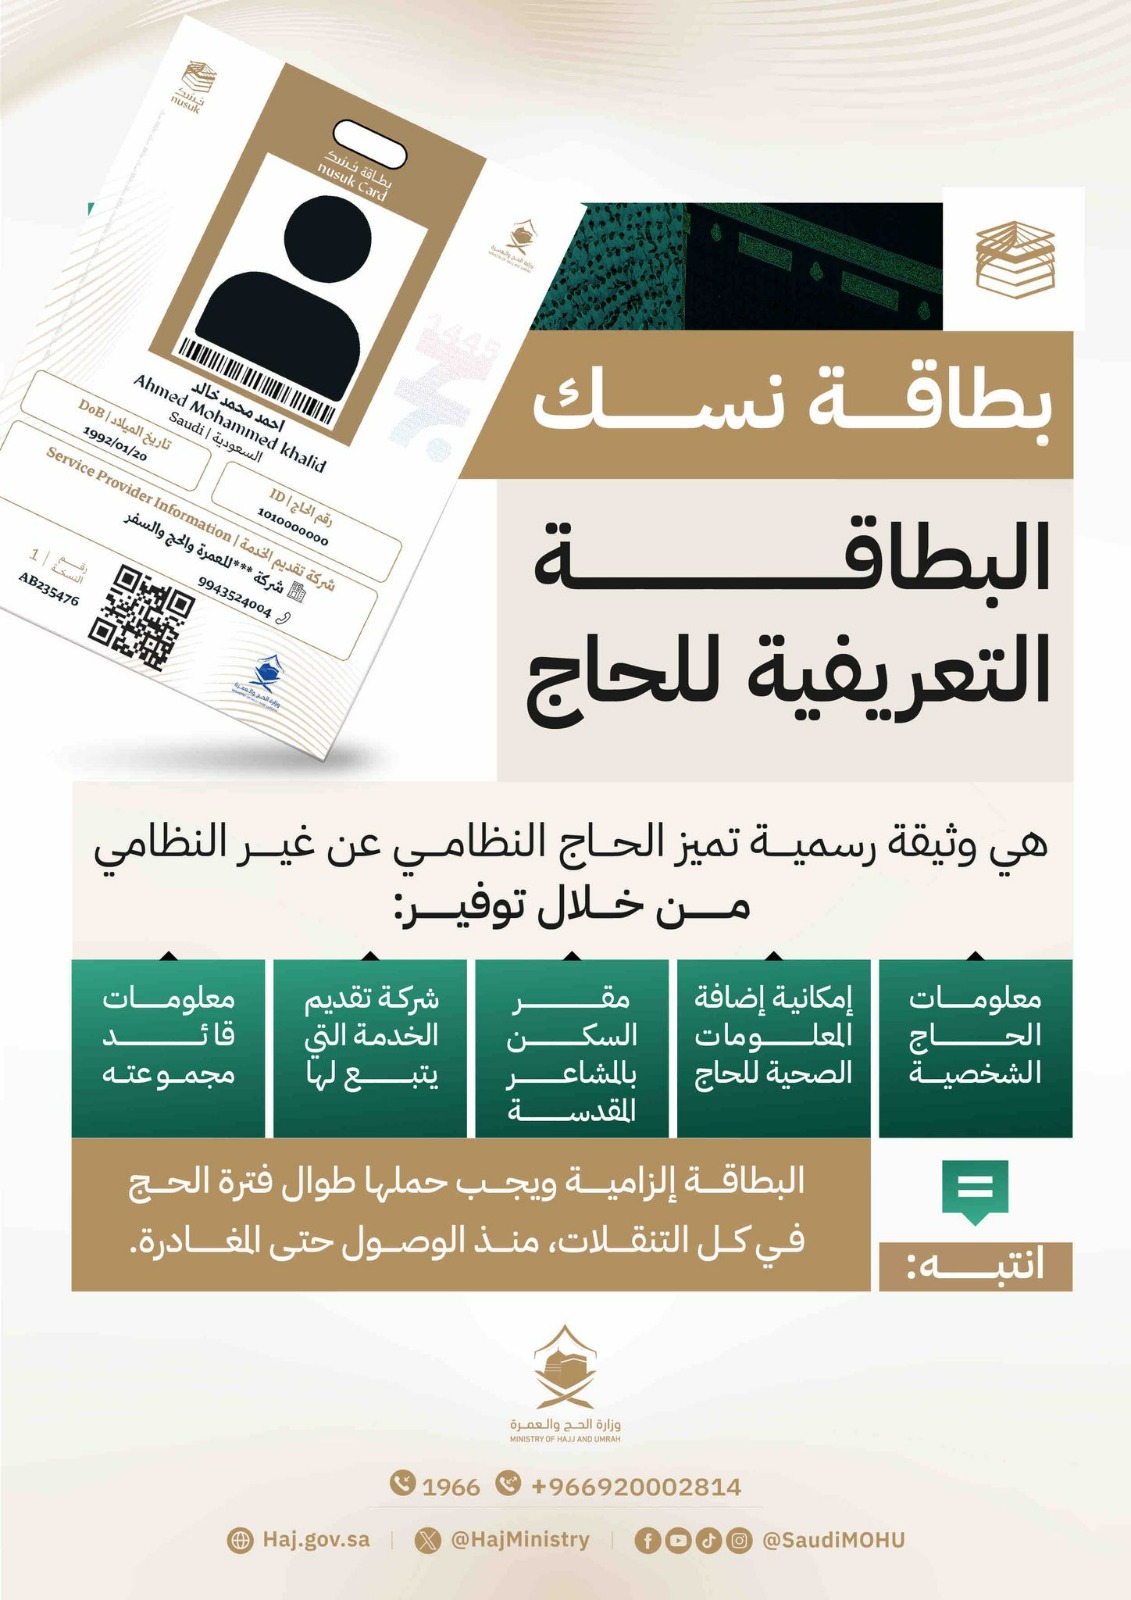 وزارة الحج والعمرة السعودية تعلن أنه  لن يسمح بدخول المشاعر المقدسة لغير حاملي بطاقة  نسك .